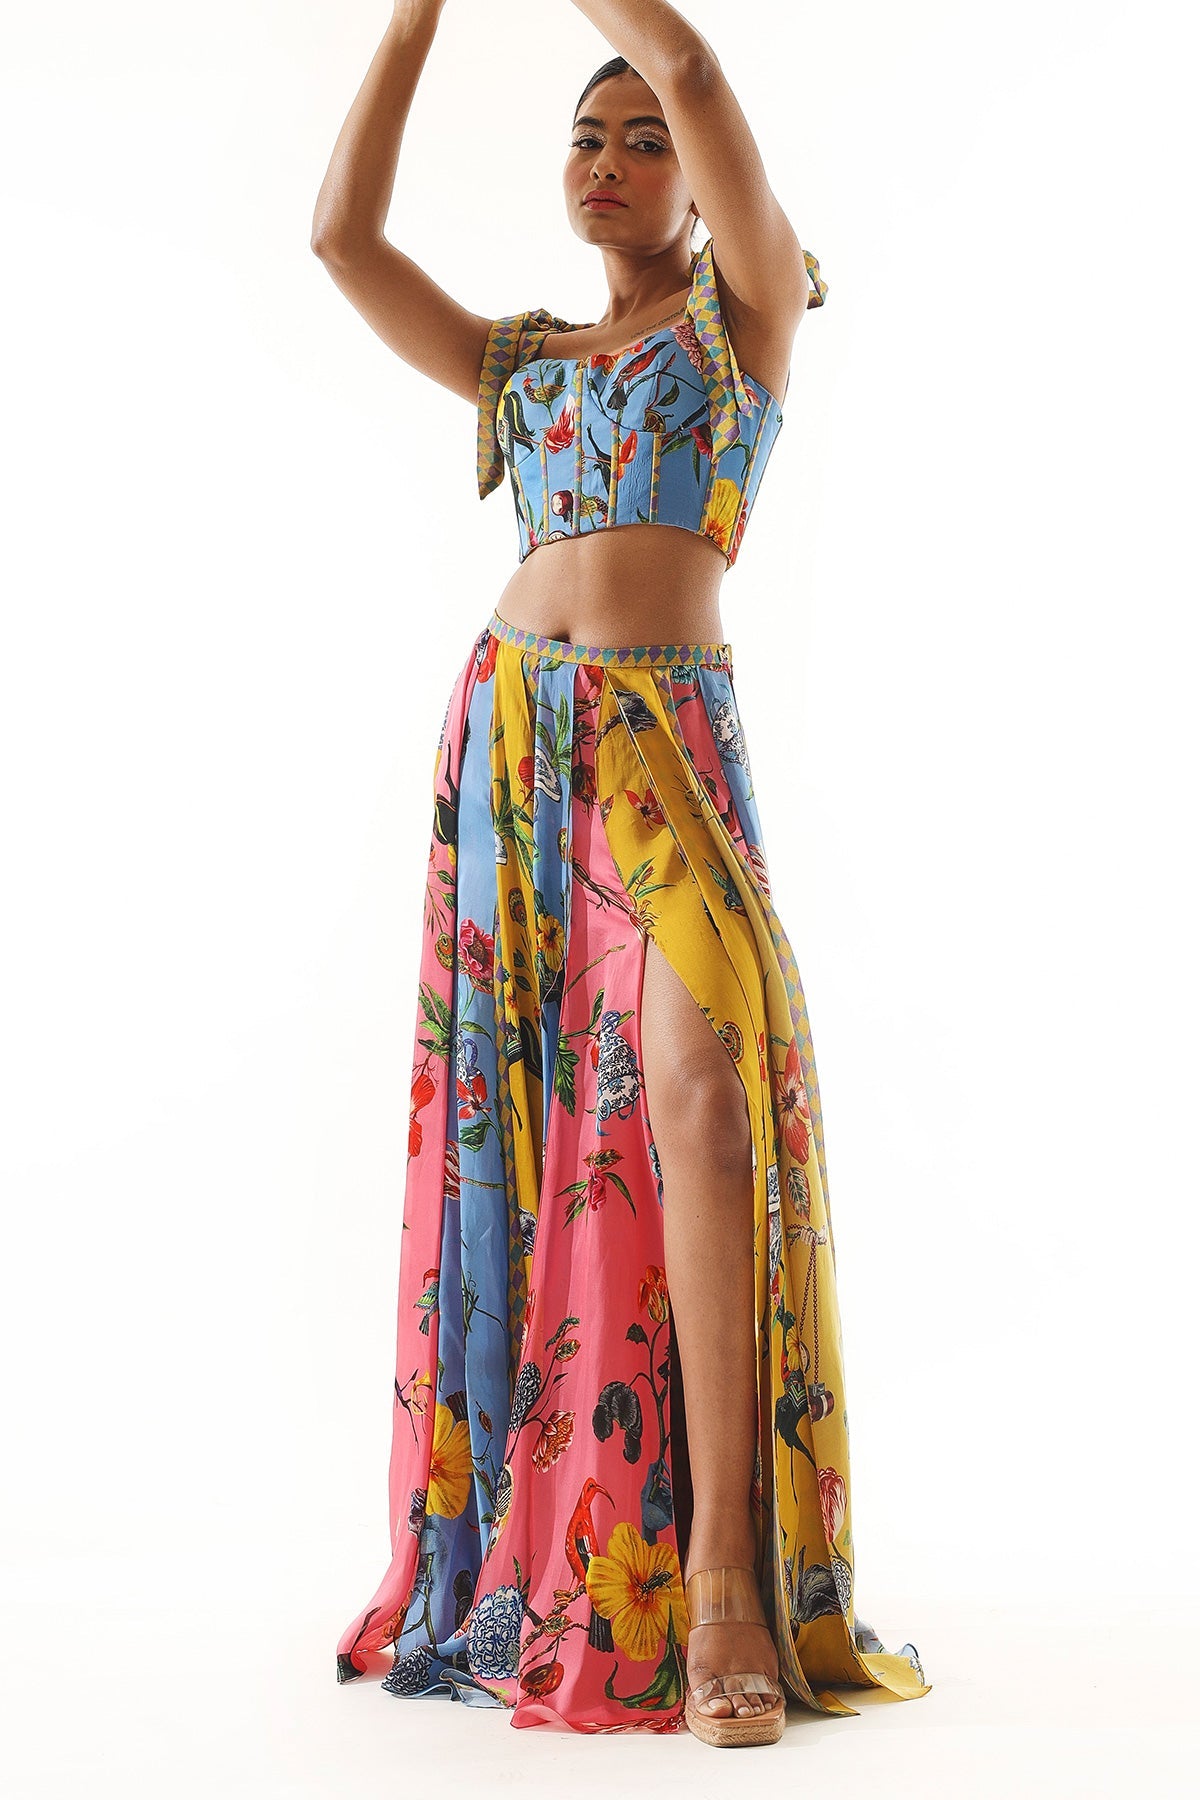 Dhriti Mehra in Printed Layered Skirt